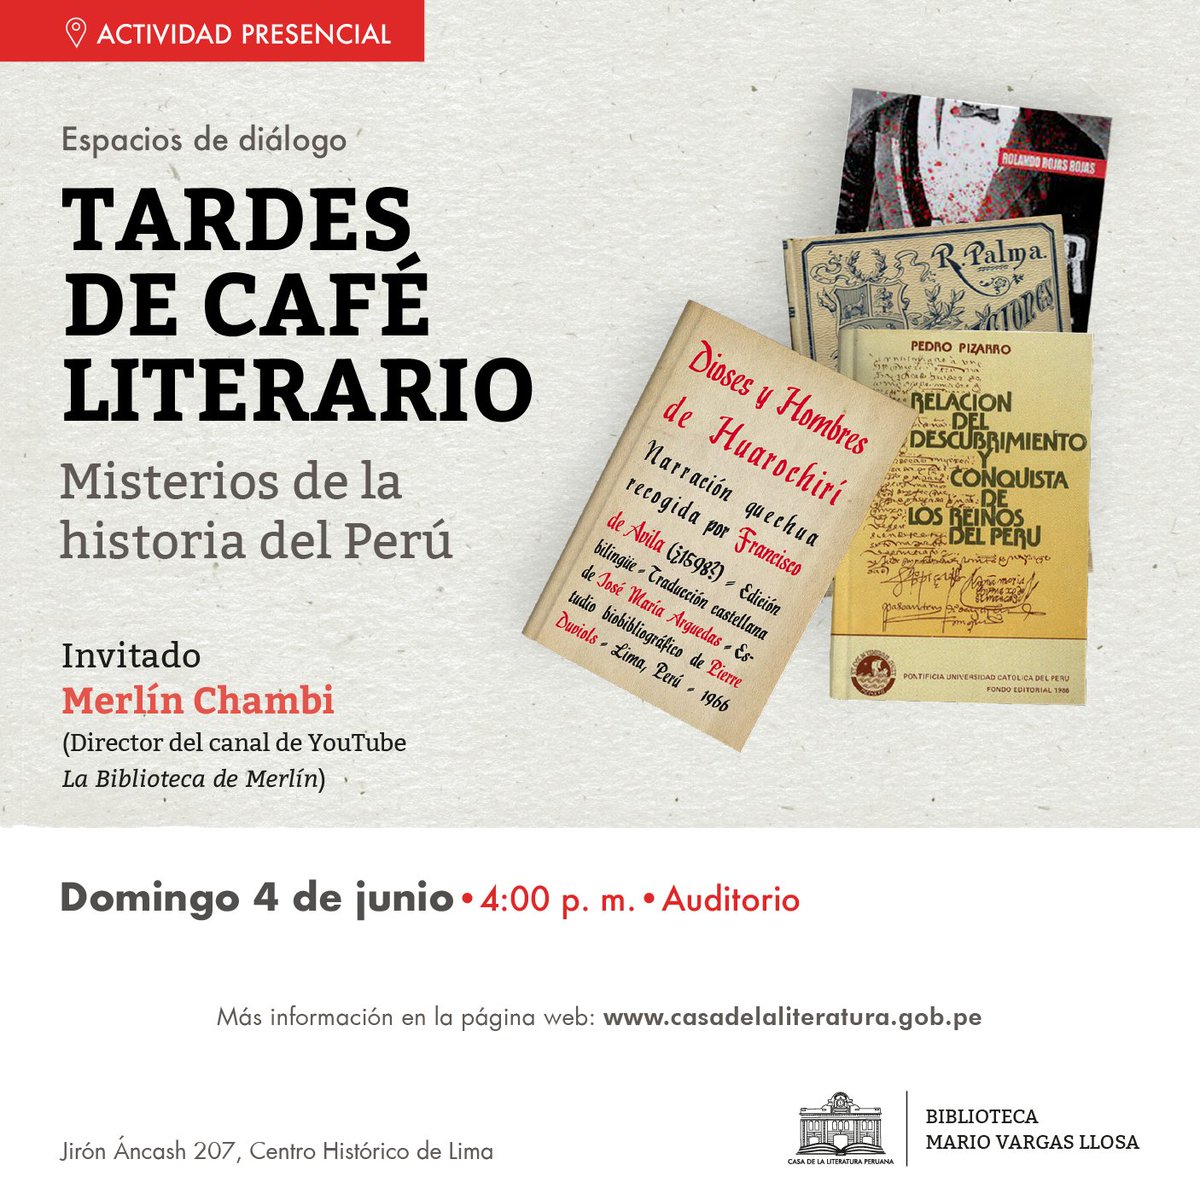 ¿Quieres conocer algunos de los misterios de la historia del Perú? El historiador Merlín Chambi, de La Biblioteca de Merlín, estará en una nueva edición de Tardes de Café Literario el domingo 4 de junio, a las 4: 00 p. m. #IngresoLibre